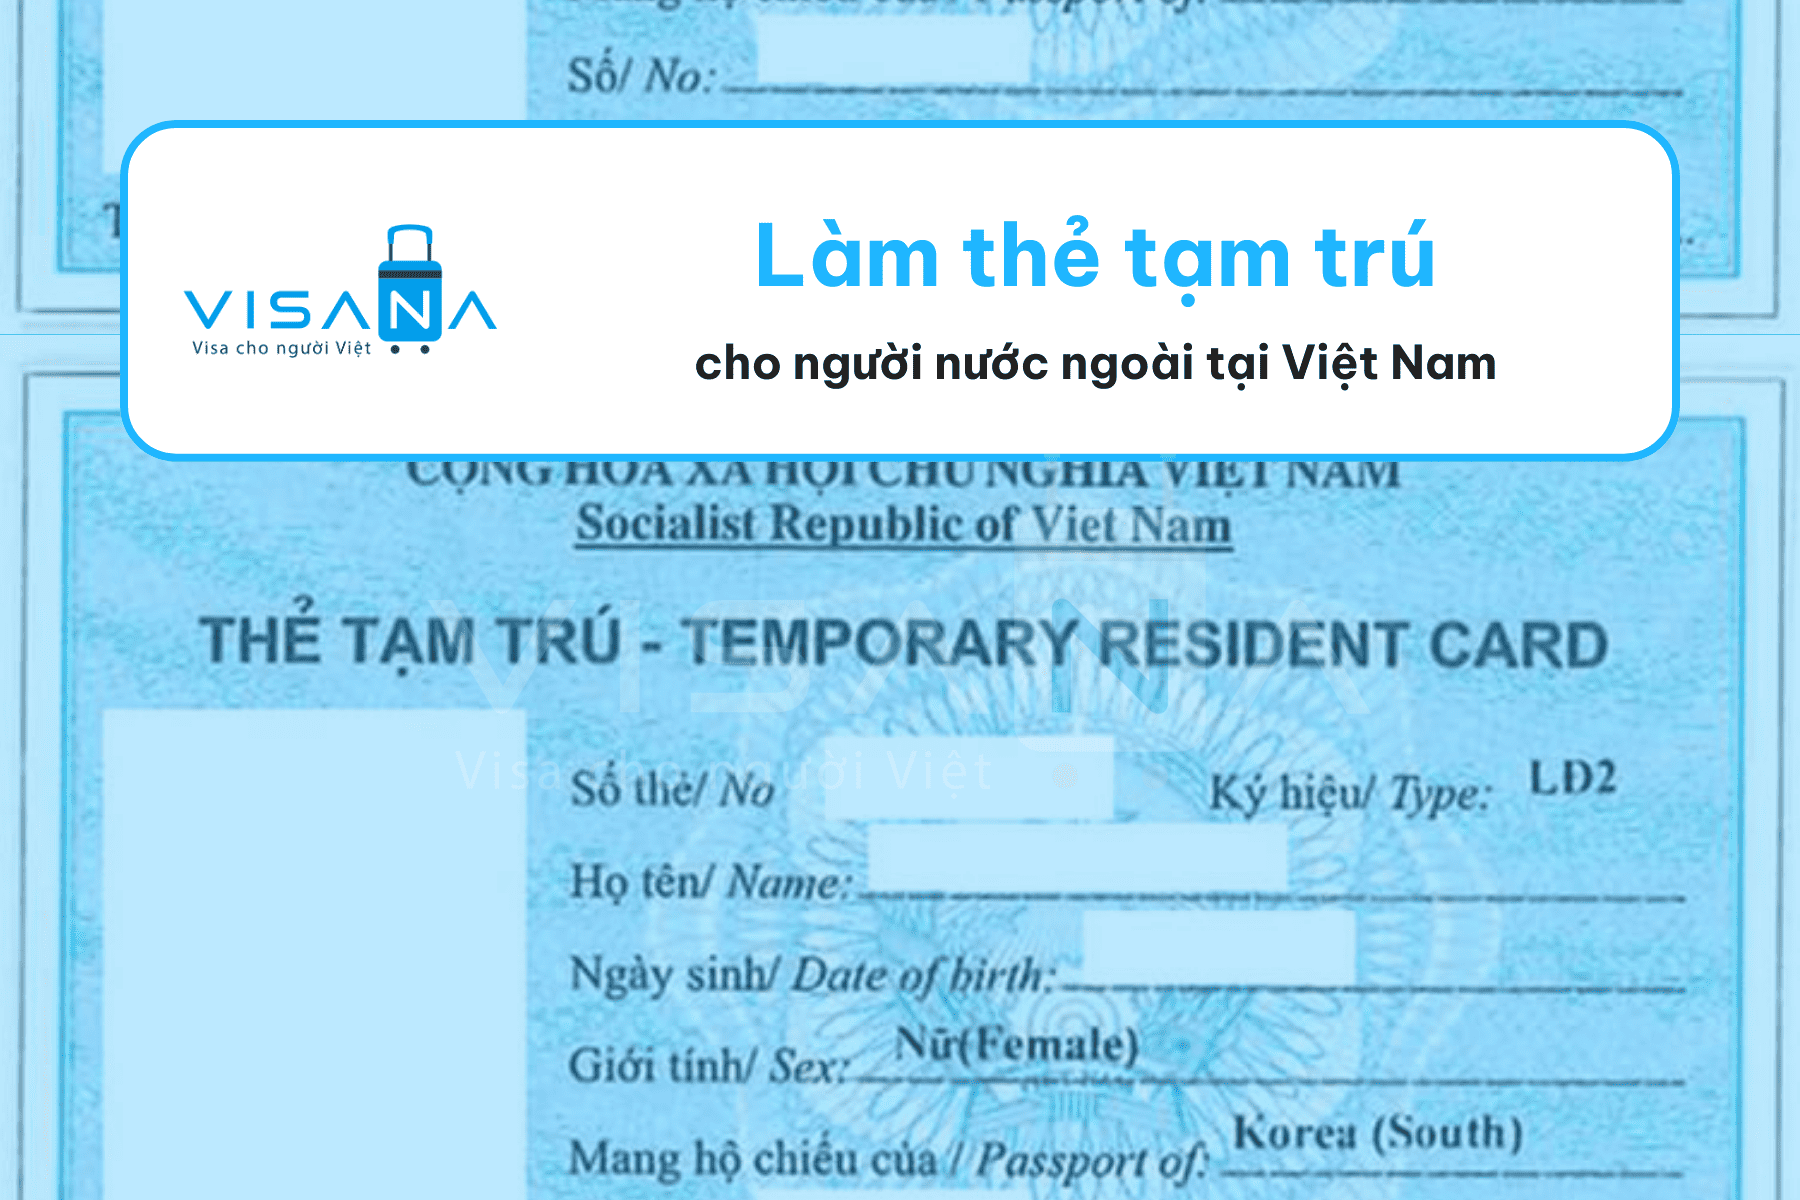 Dịch vụ làm thẻ tạm trú cho người nước ngoài tại Việt Nam visana